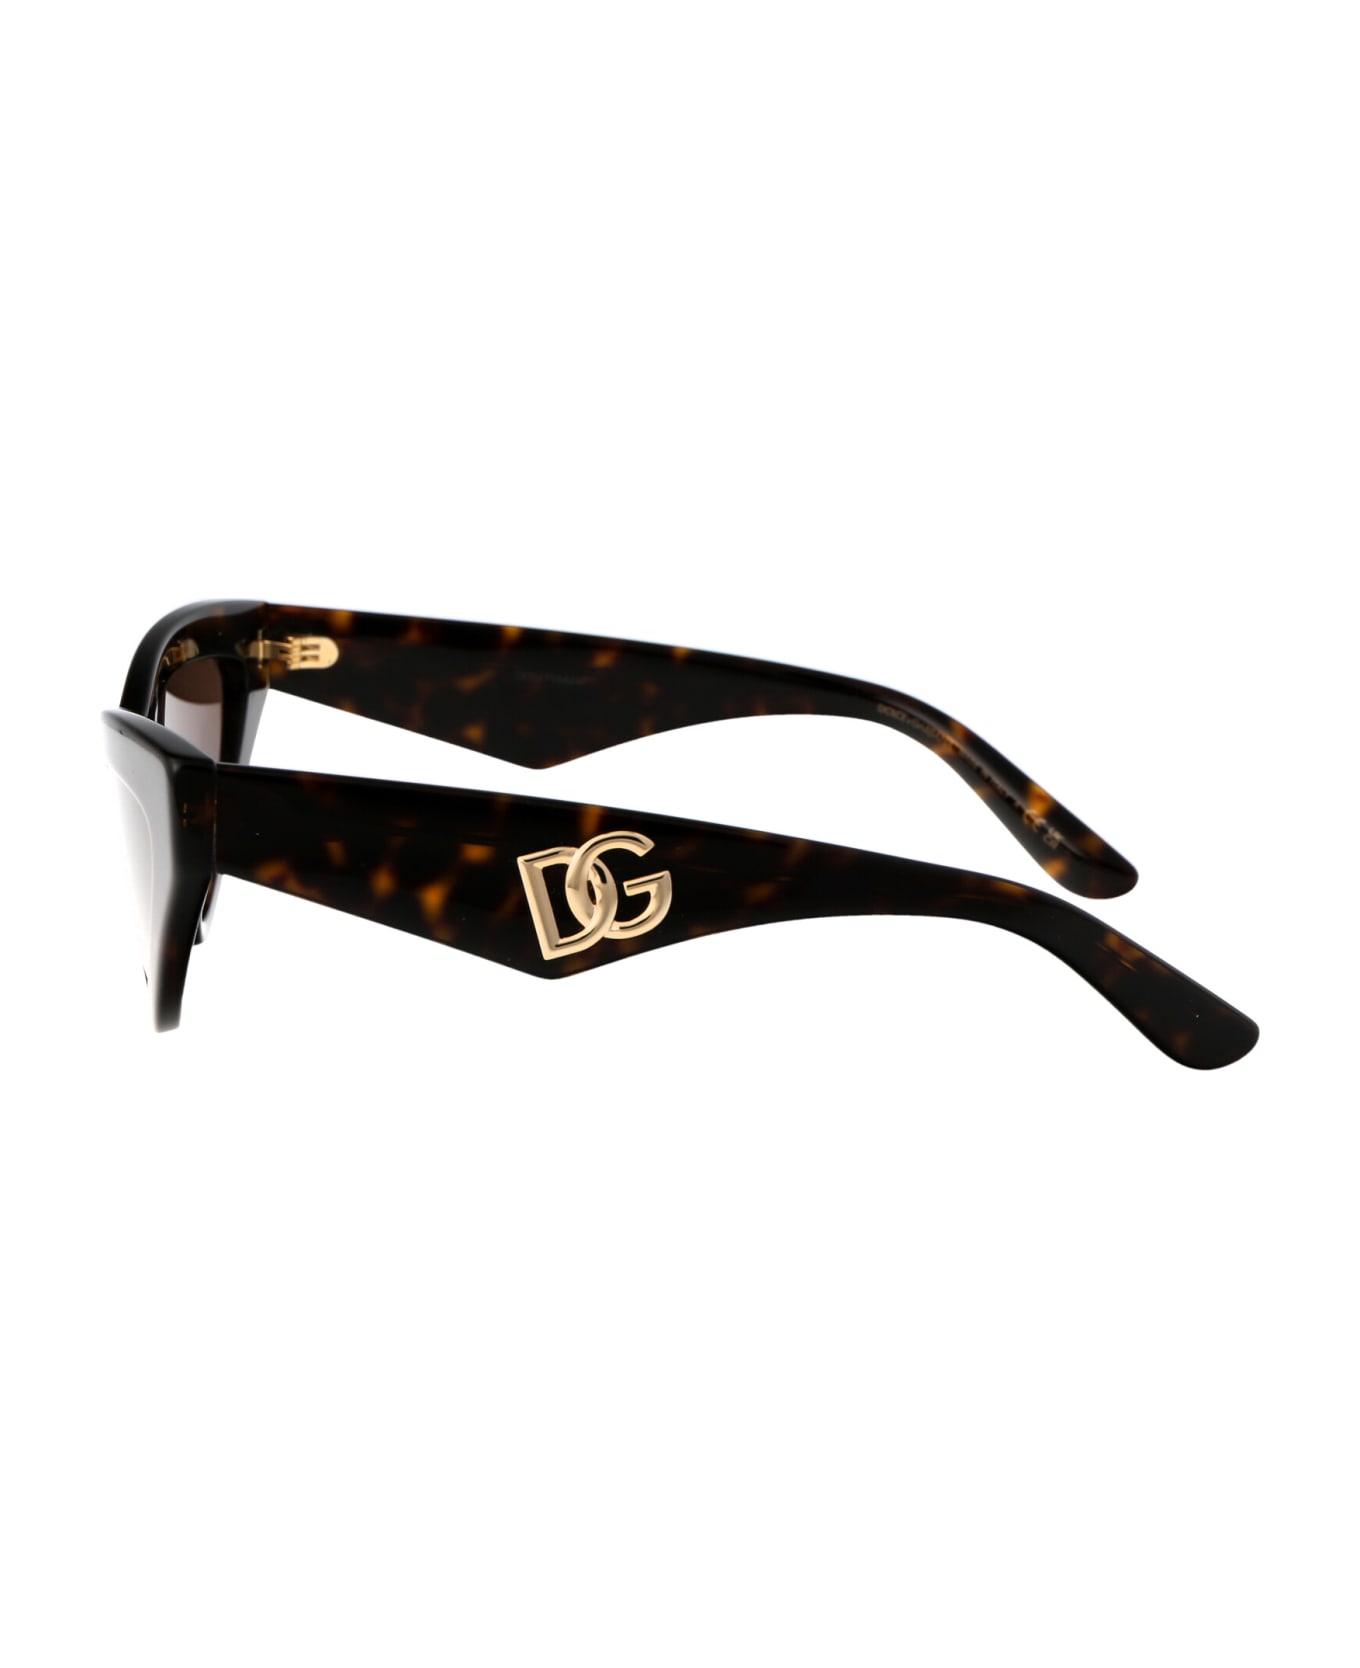 Dolce & Gabbana Eyewear 0dg4439 Sunglasses - 502/73 HAVANA